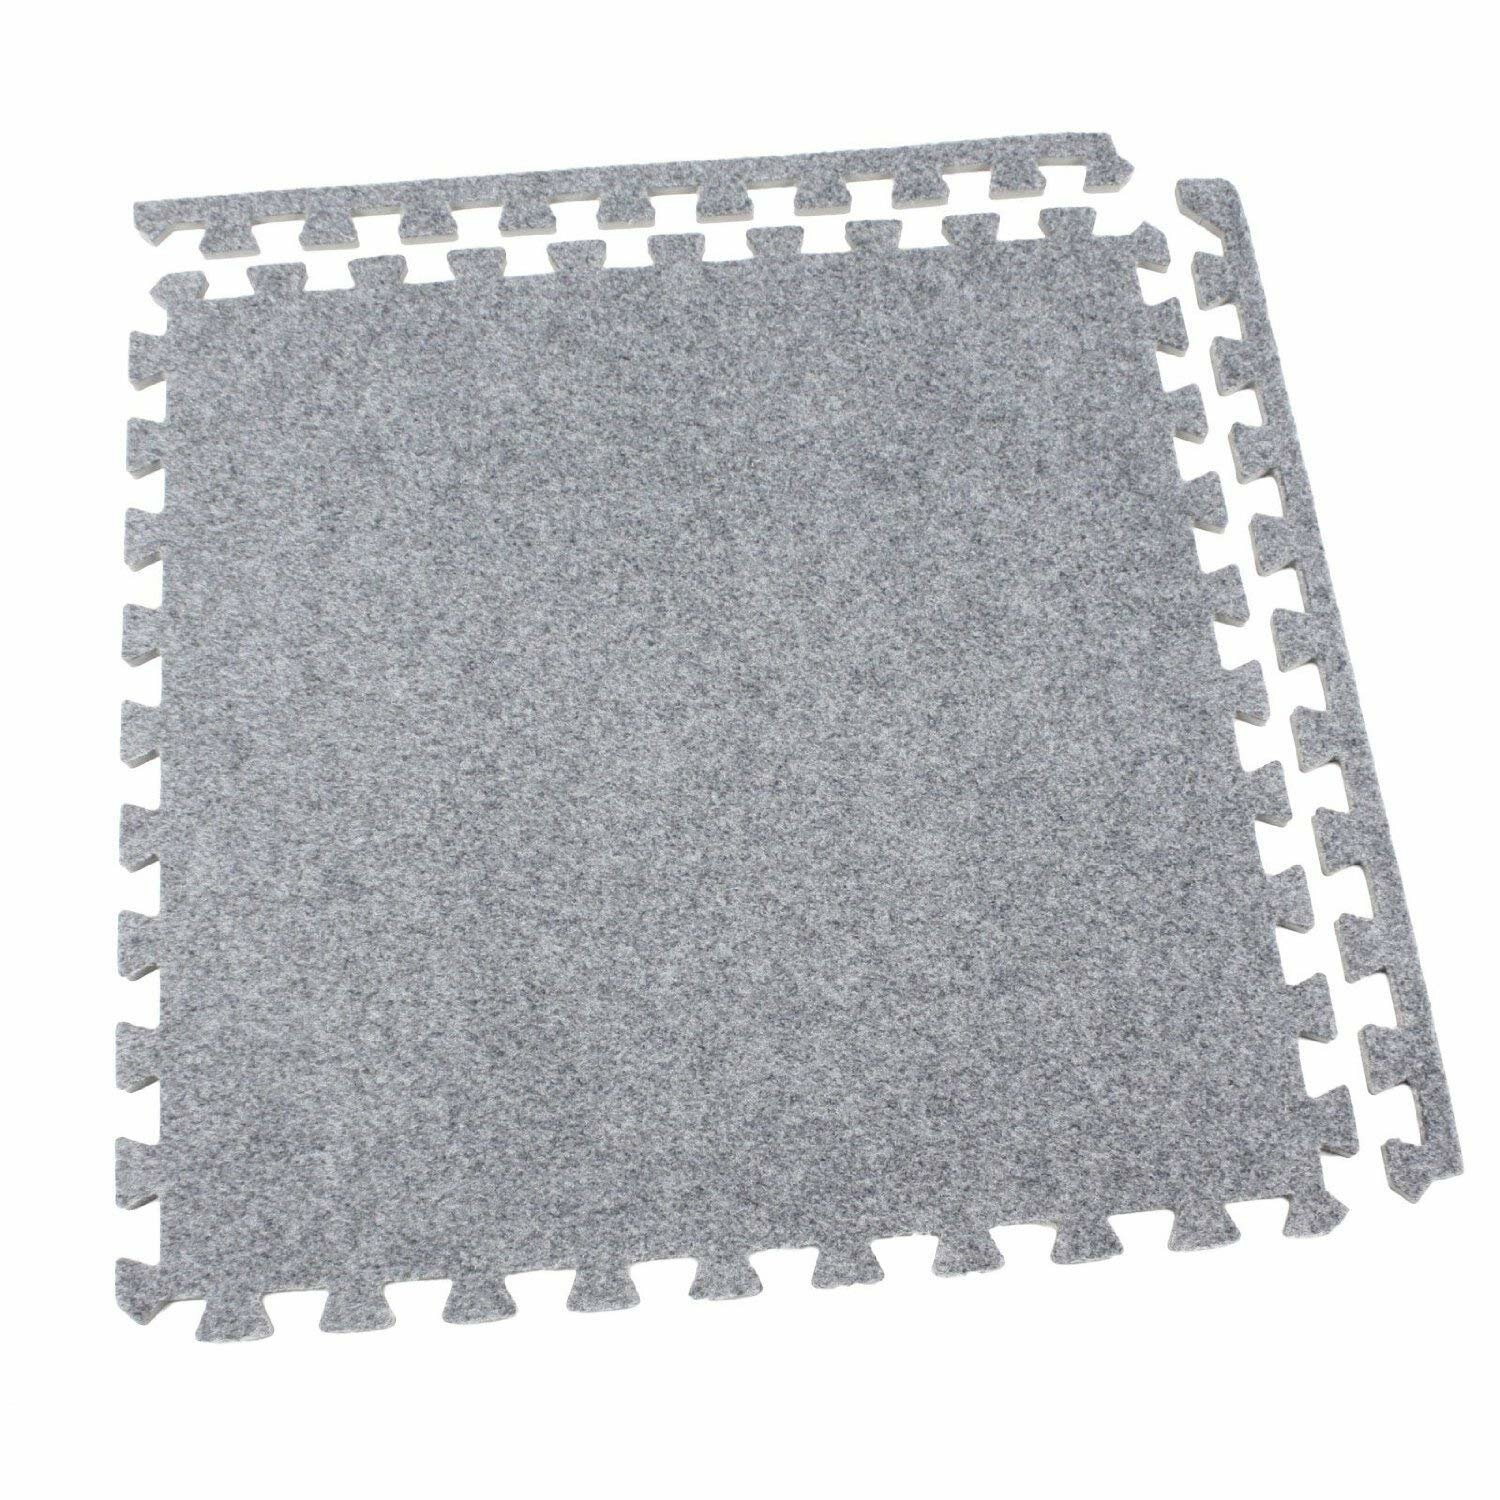 Interlocking Carpet Squares